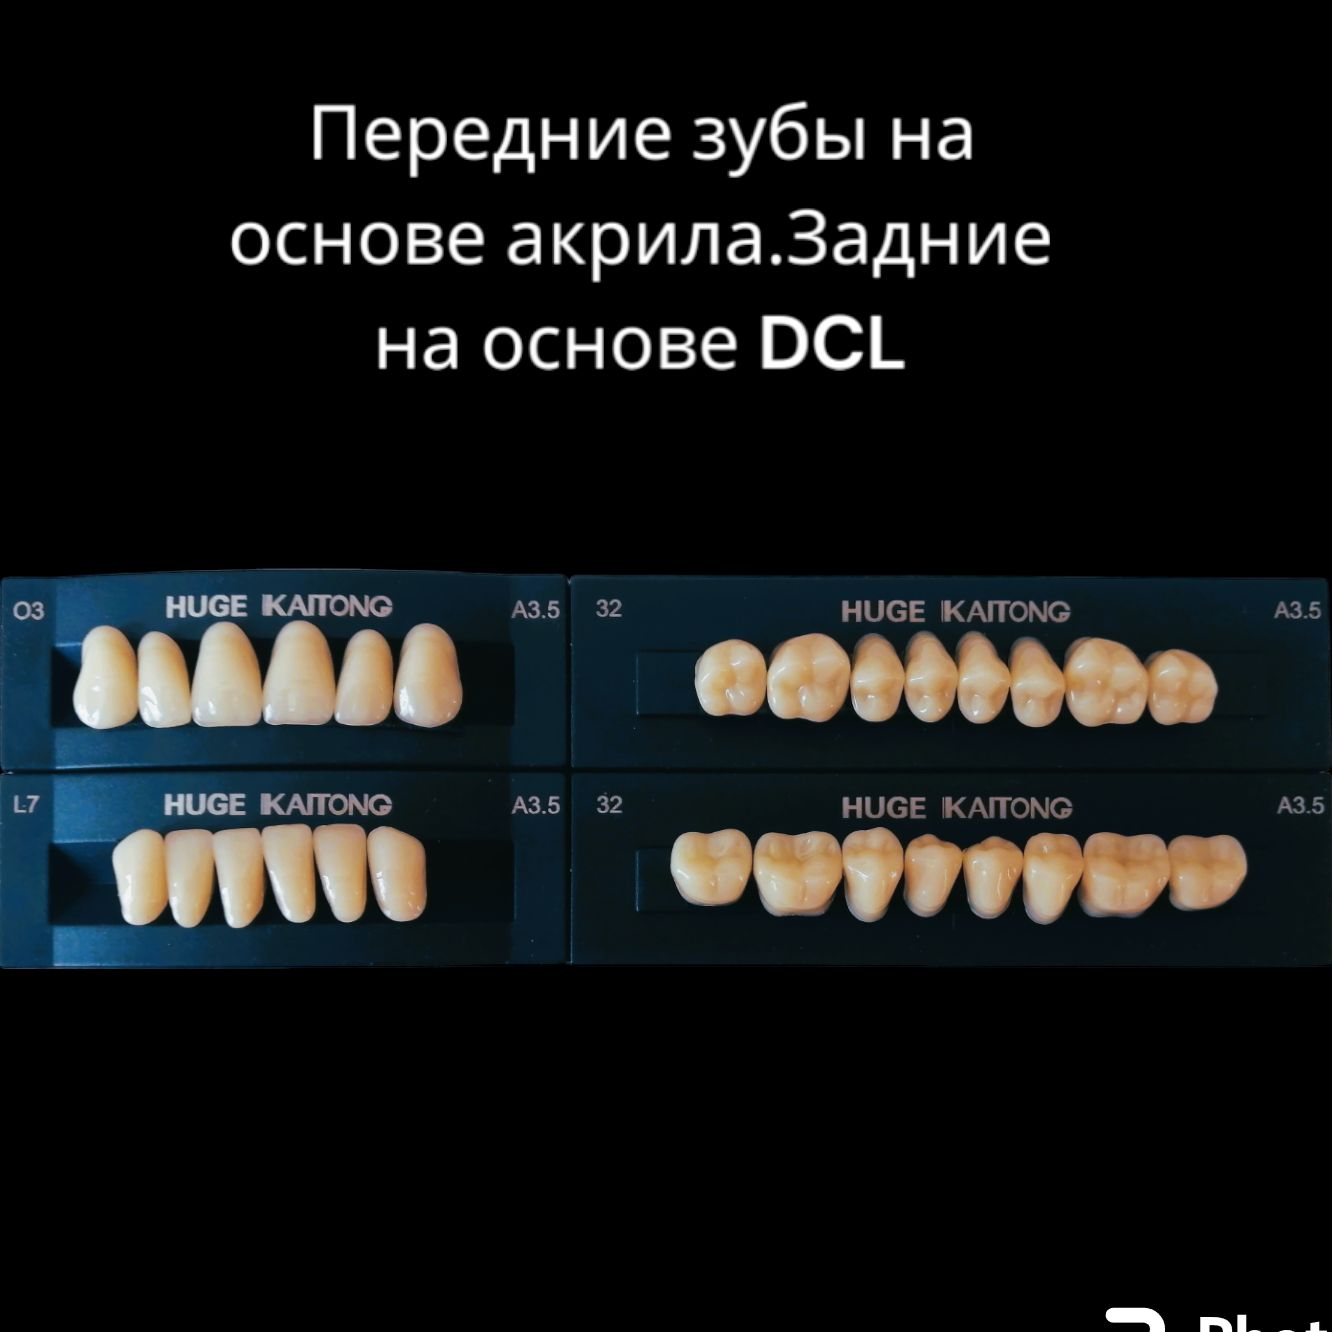 Зубыакриловые2-хслойныеА3,5О3Kaitong(1гарнитур,28зубов)HUGEDENTAL